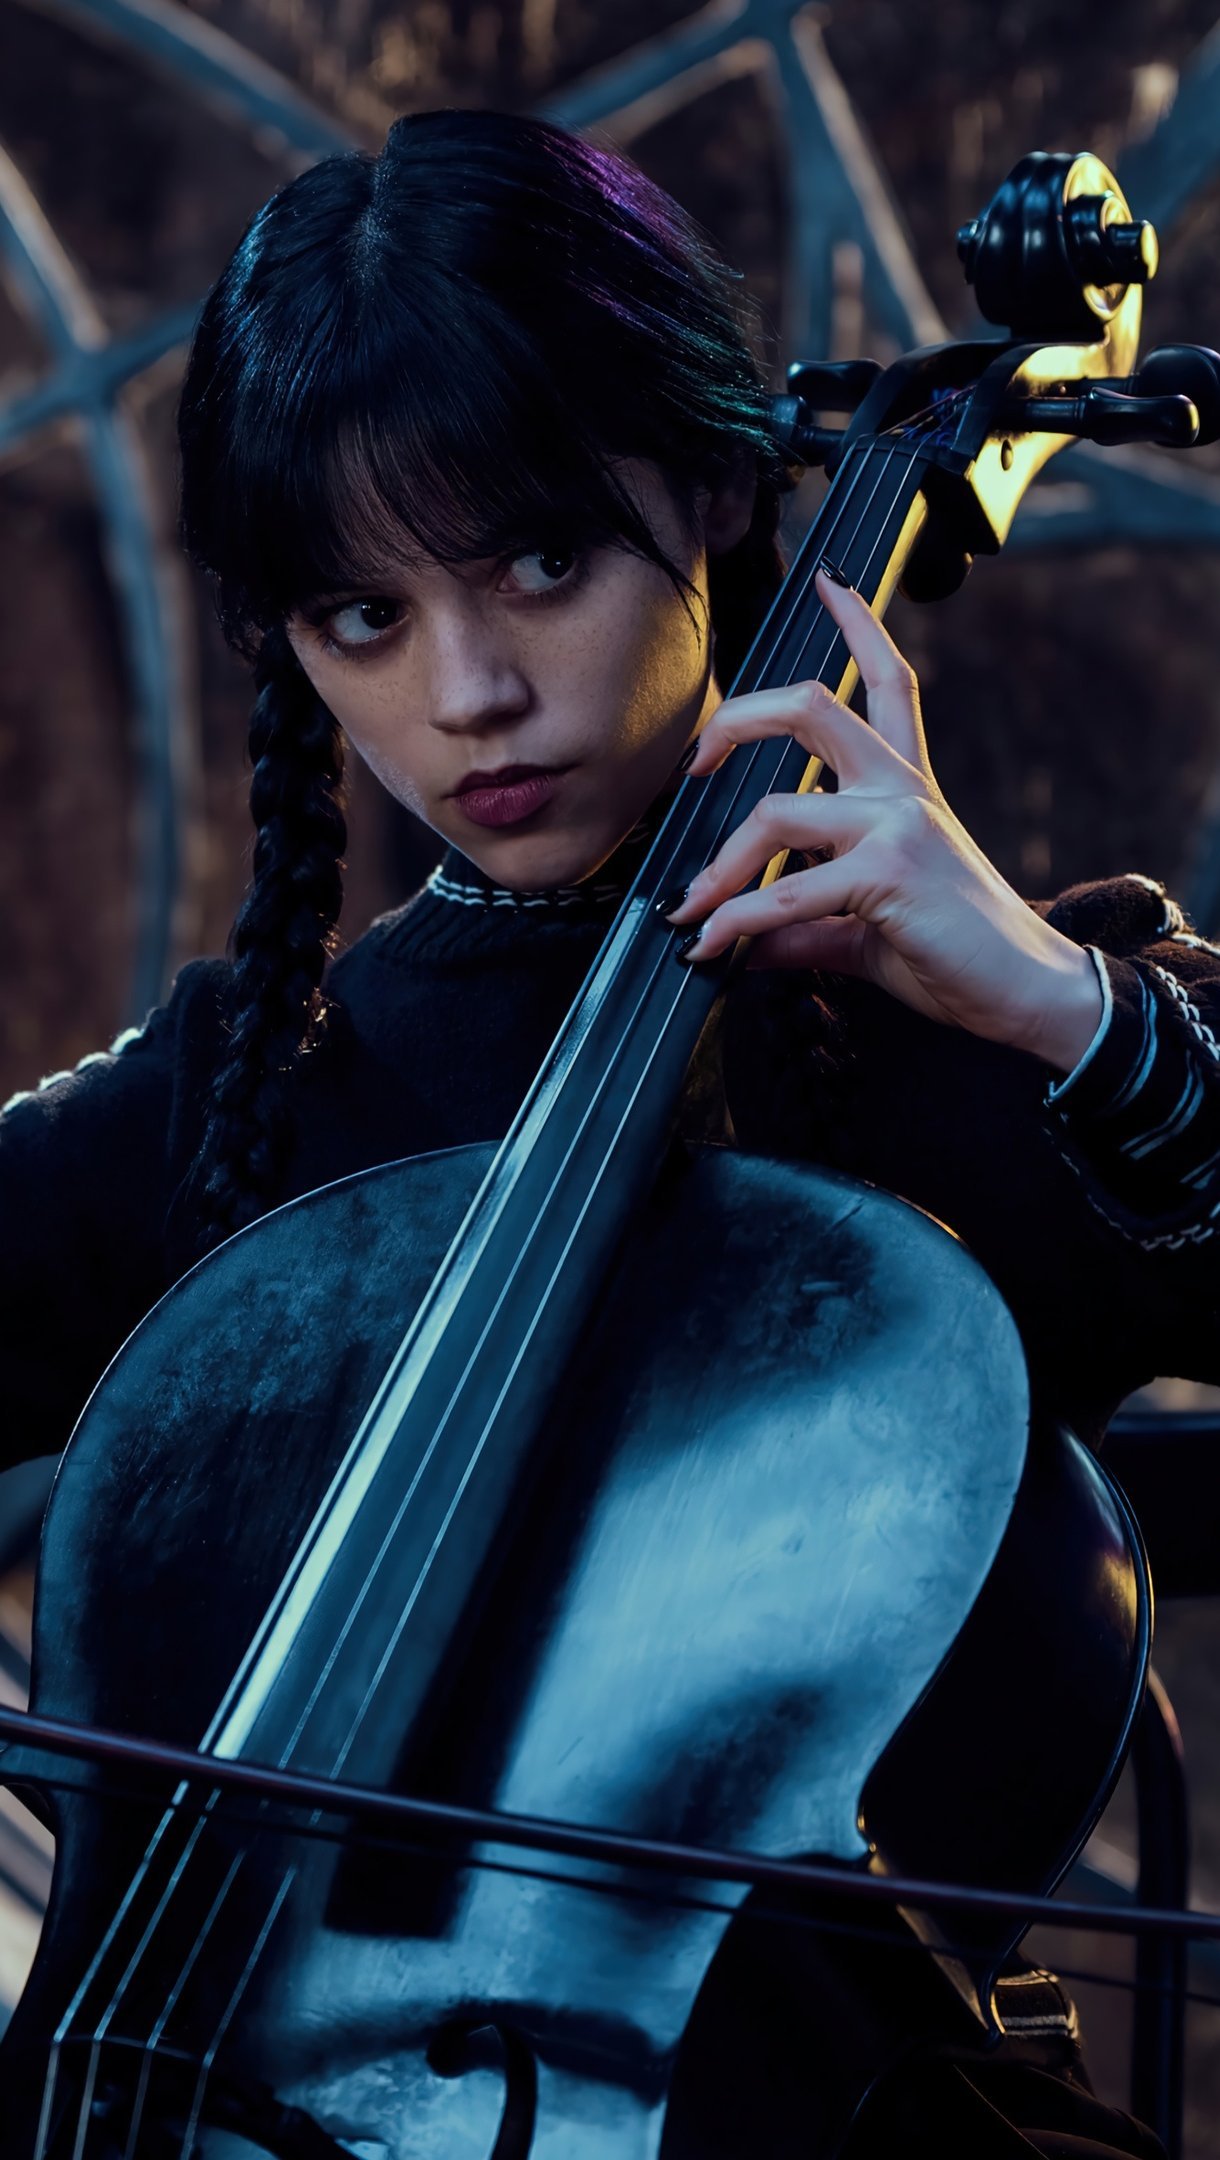 Fondos de pantalla Merlina tocando el violin Vertical